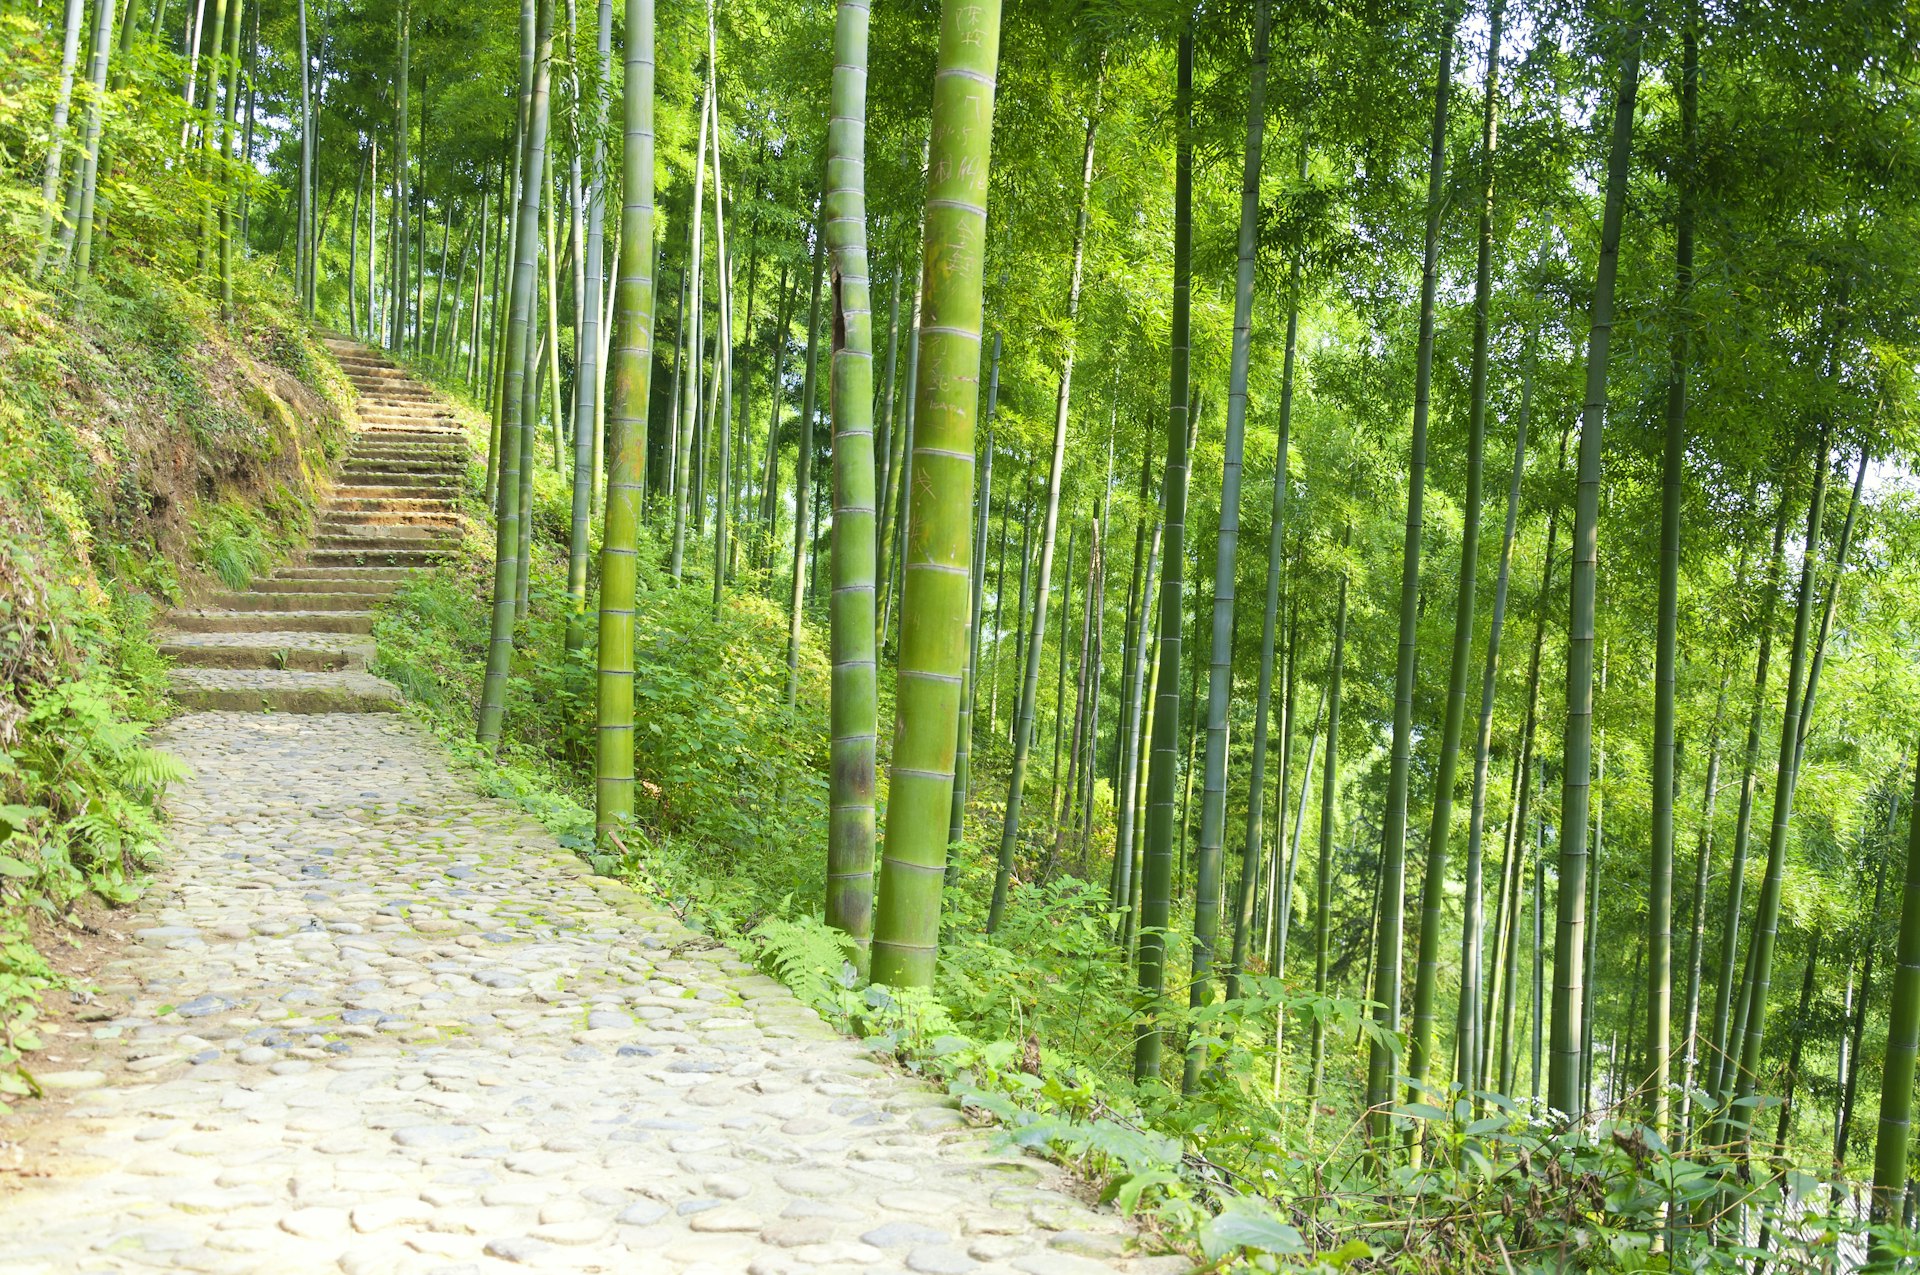 A walkway leading up a mountain in a bamboo forest, Anji Bamboo Sea, Huzhou, Zhejiang Province, China